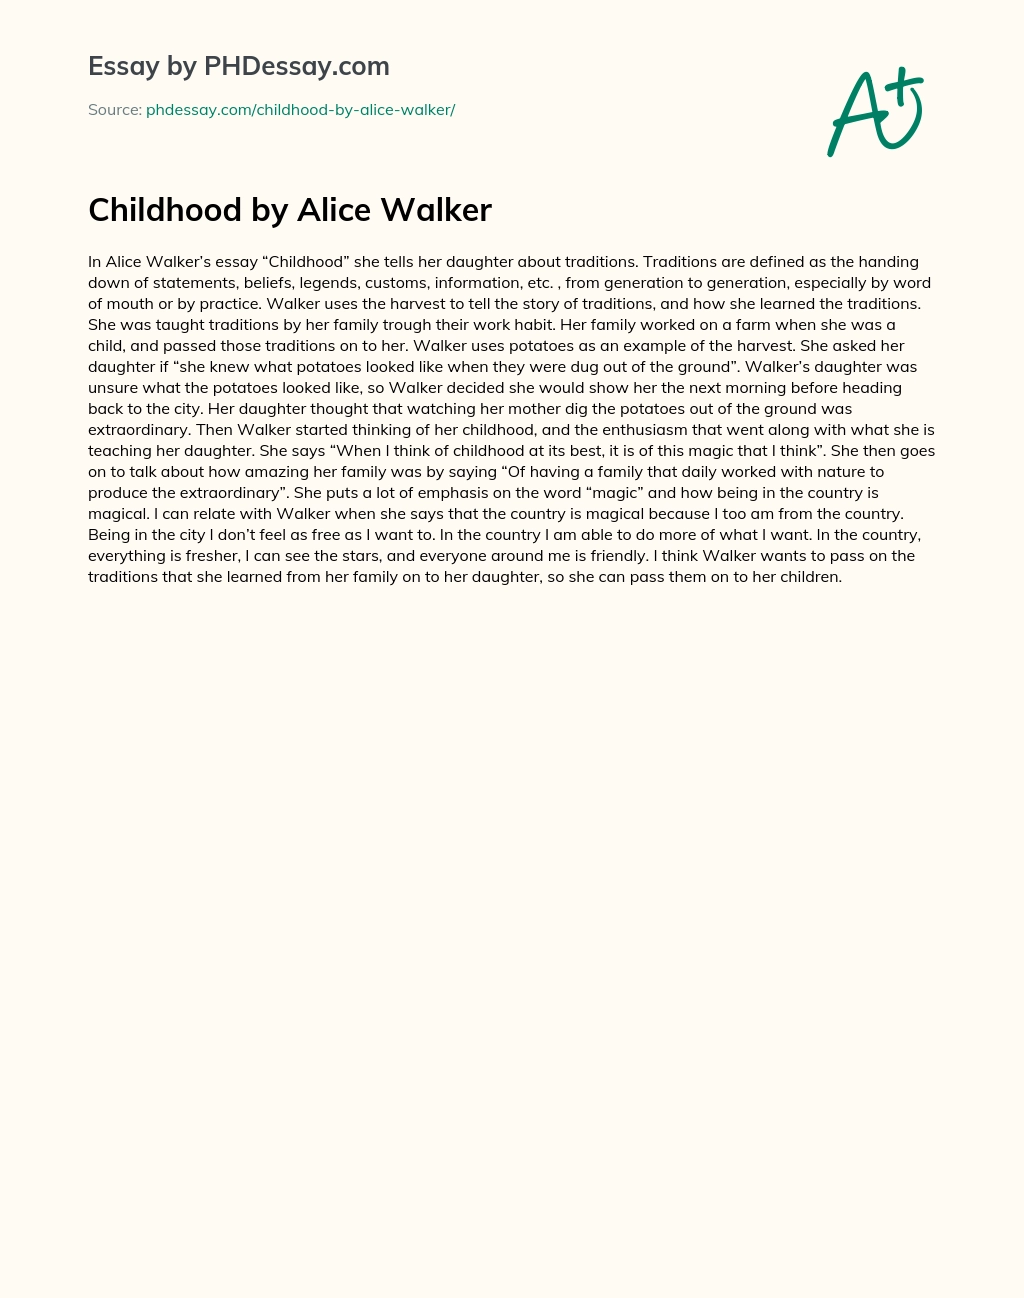 Childhood by Alice Walker essay